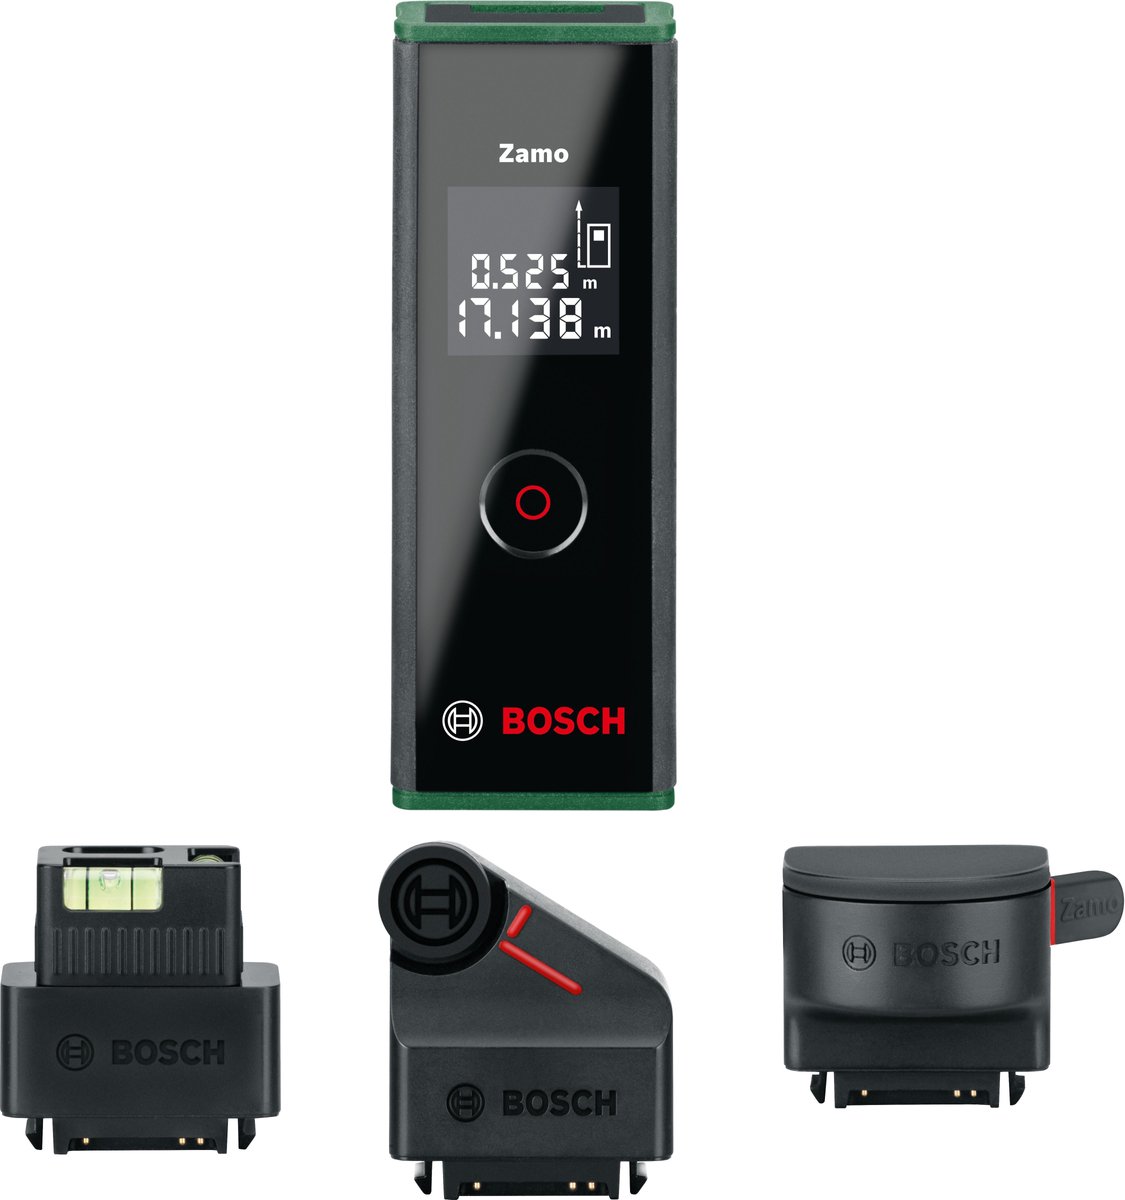 Télémètre laser numérique Bosch Zamo III, Niveau et outils de mesure